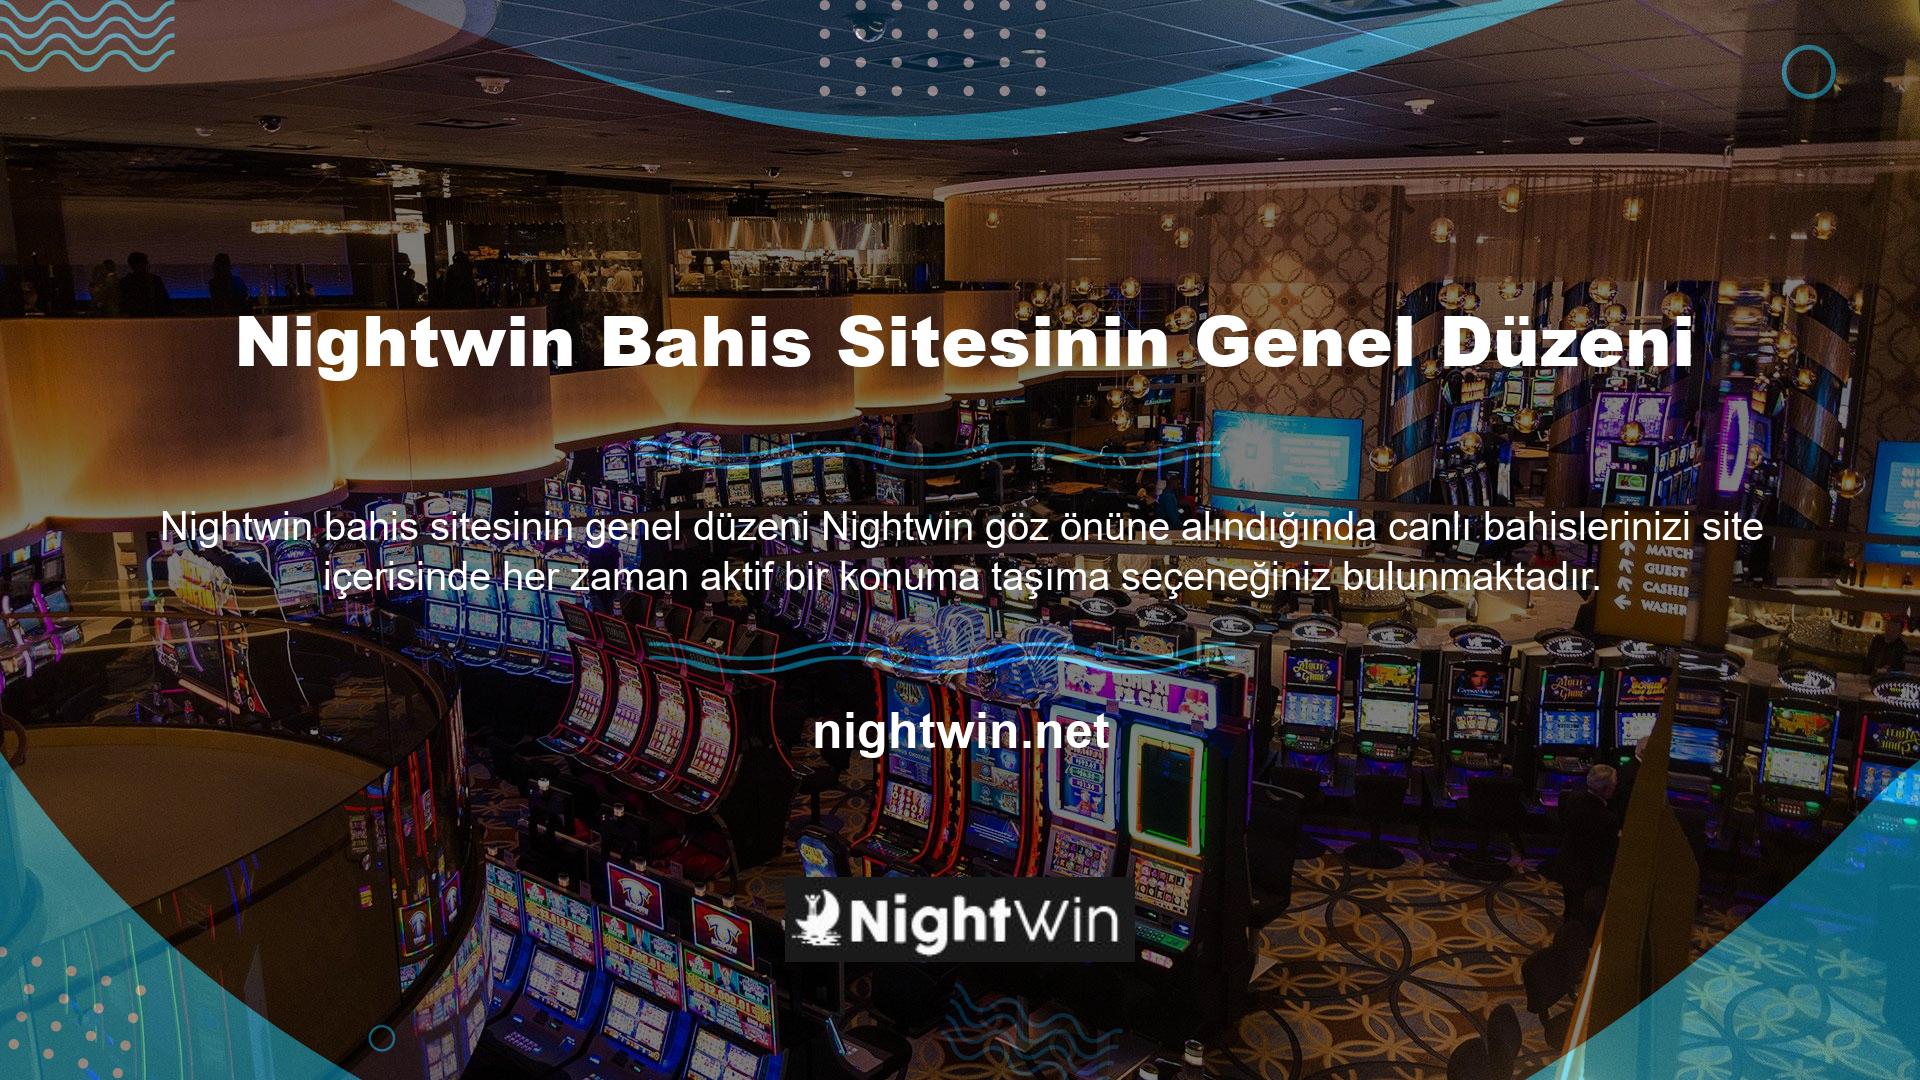 Özellikle Nightwin doğrudan haber değerlendiren bir sitedir